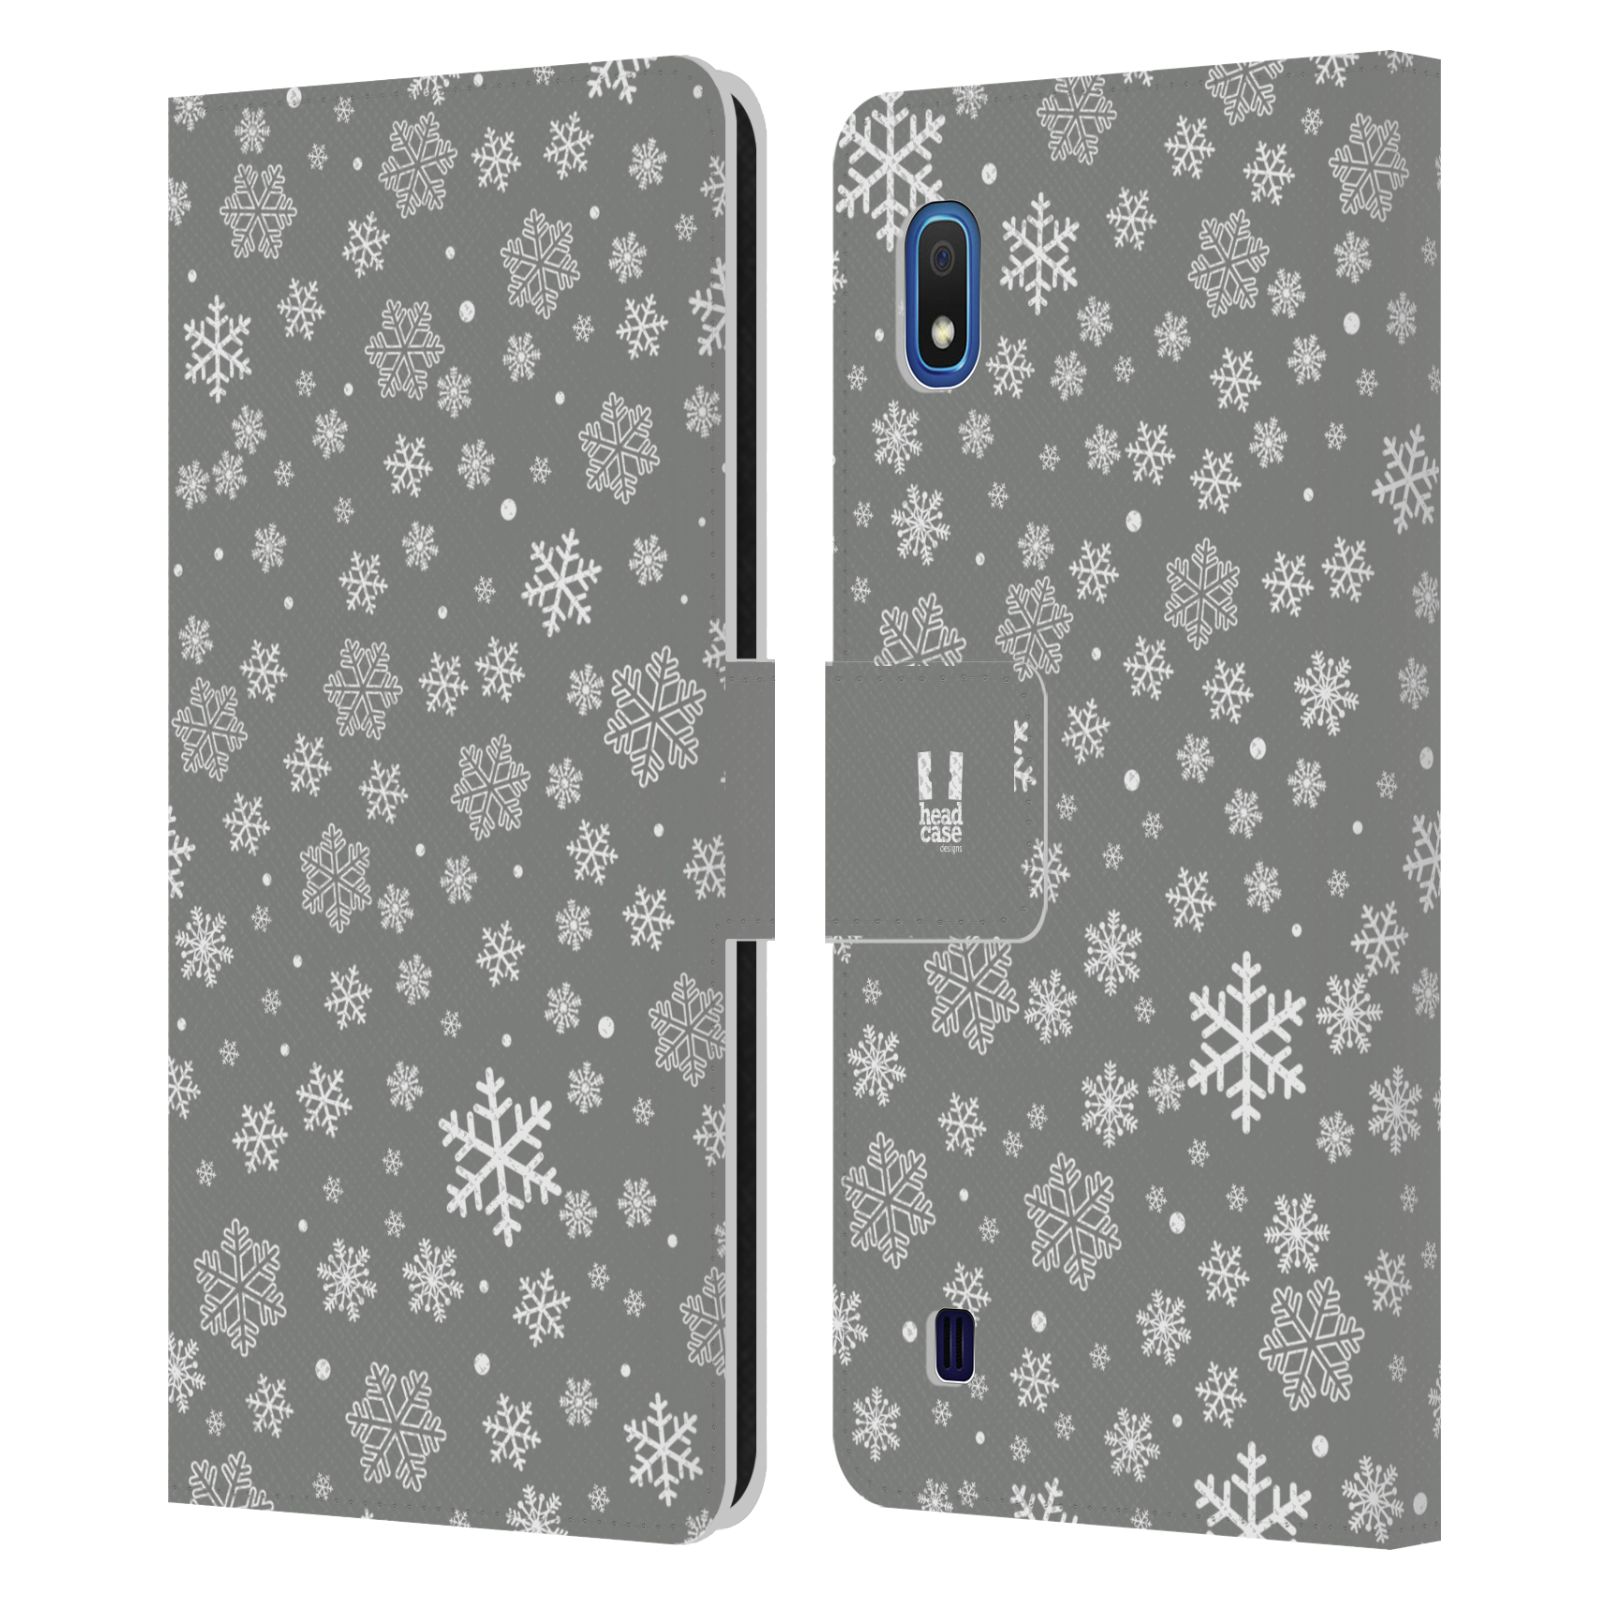 Pouzdro na mobil Samsung Galaxy A10 stříbrné vzory sněžná vločka